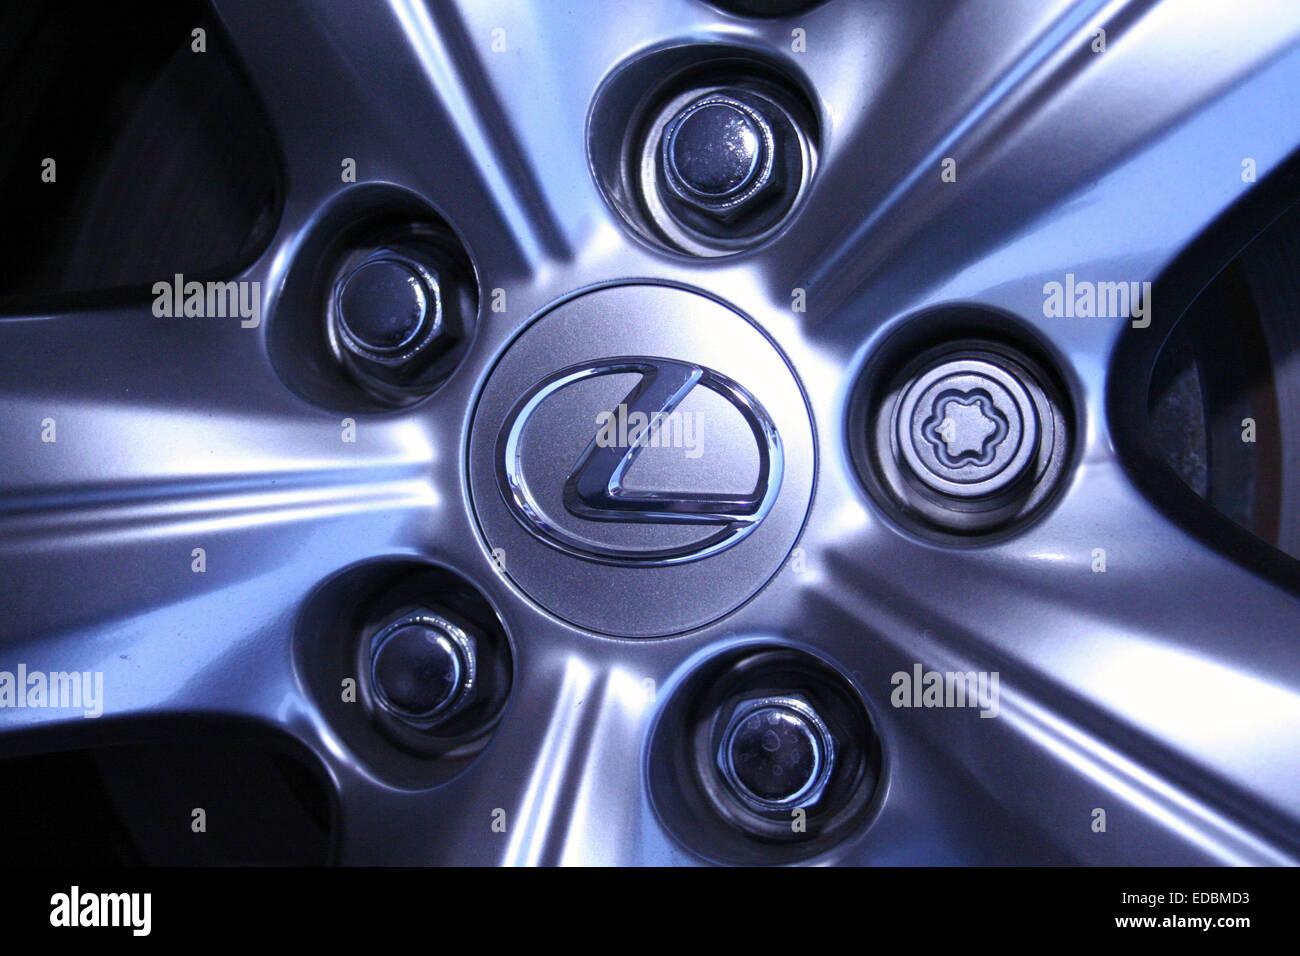 Imagen ilustrativa de una rueda del coche Lexus Foto de stock